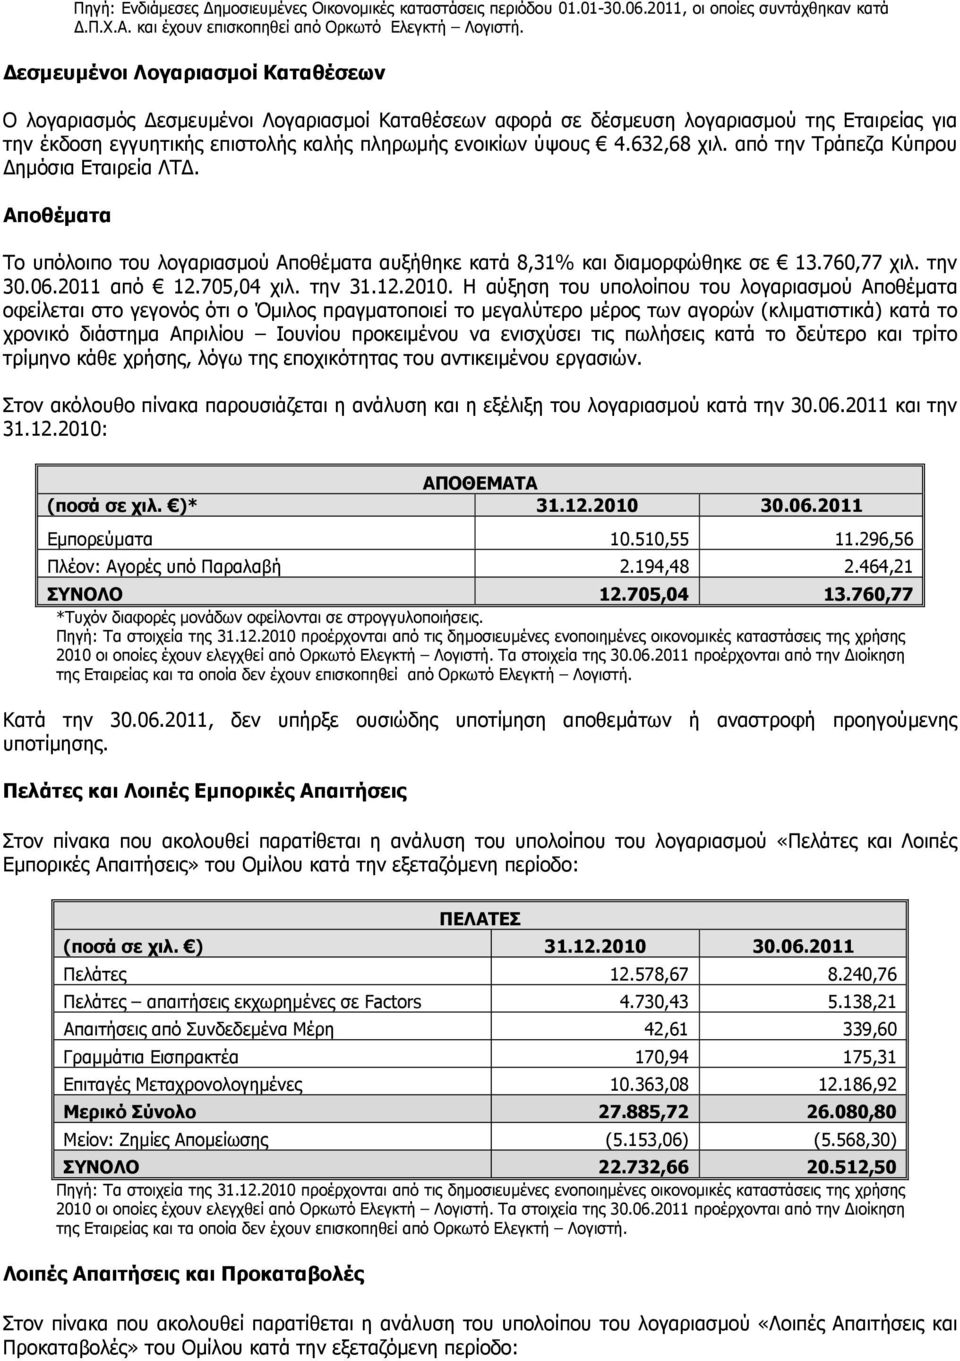 632,68 χιλ. από την Τράπεζα Κύπρου ηµόσια Εταιρεία ΛΤ. Αποθέµατα Τo υπόλοιπο του λογαριασµού Αποθέµατα αυξήθηκε κατά 8,31% και διαµορφώθηκε σε 13.760,77 χιλ. την 30.06.2011 από 12.705,04 χιλ. την 31.